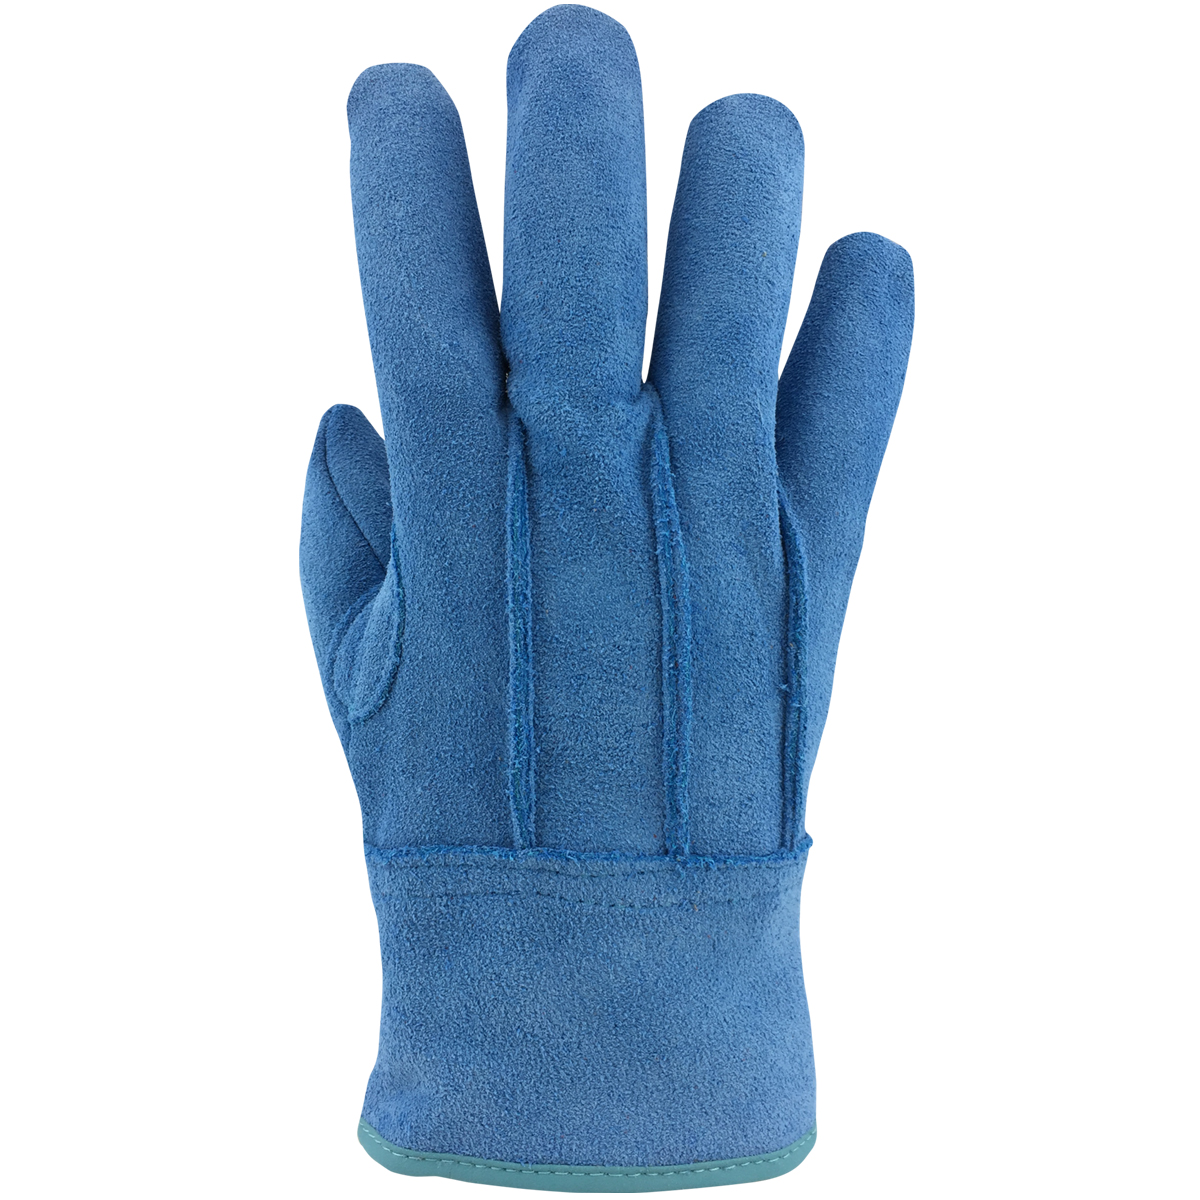 現場系女子 外縫い 内綿 ブルー AG2554 | ACE 作業用革手袋・作業用手袋のエース